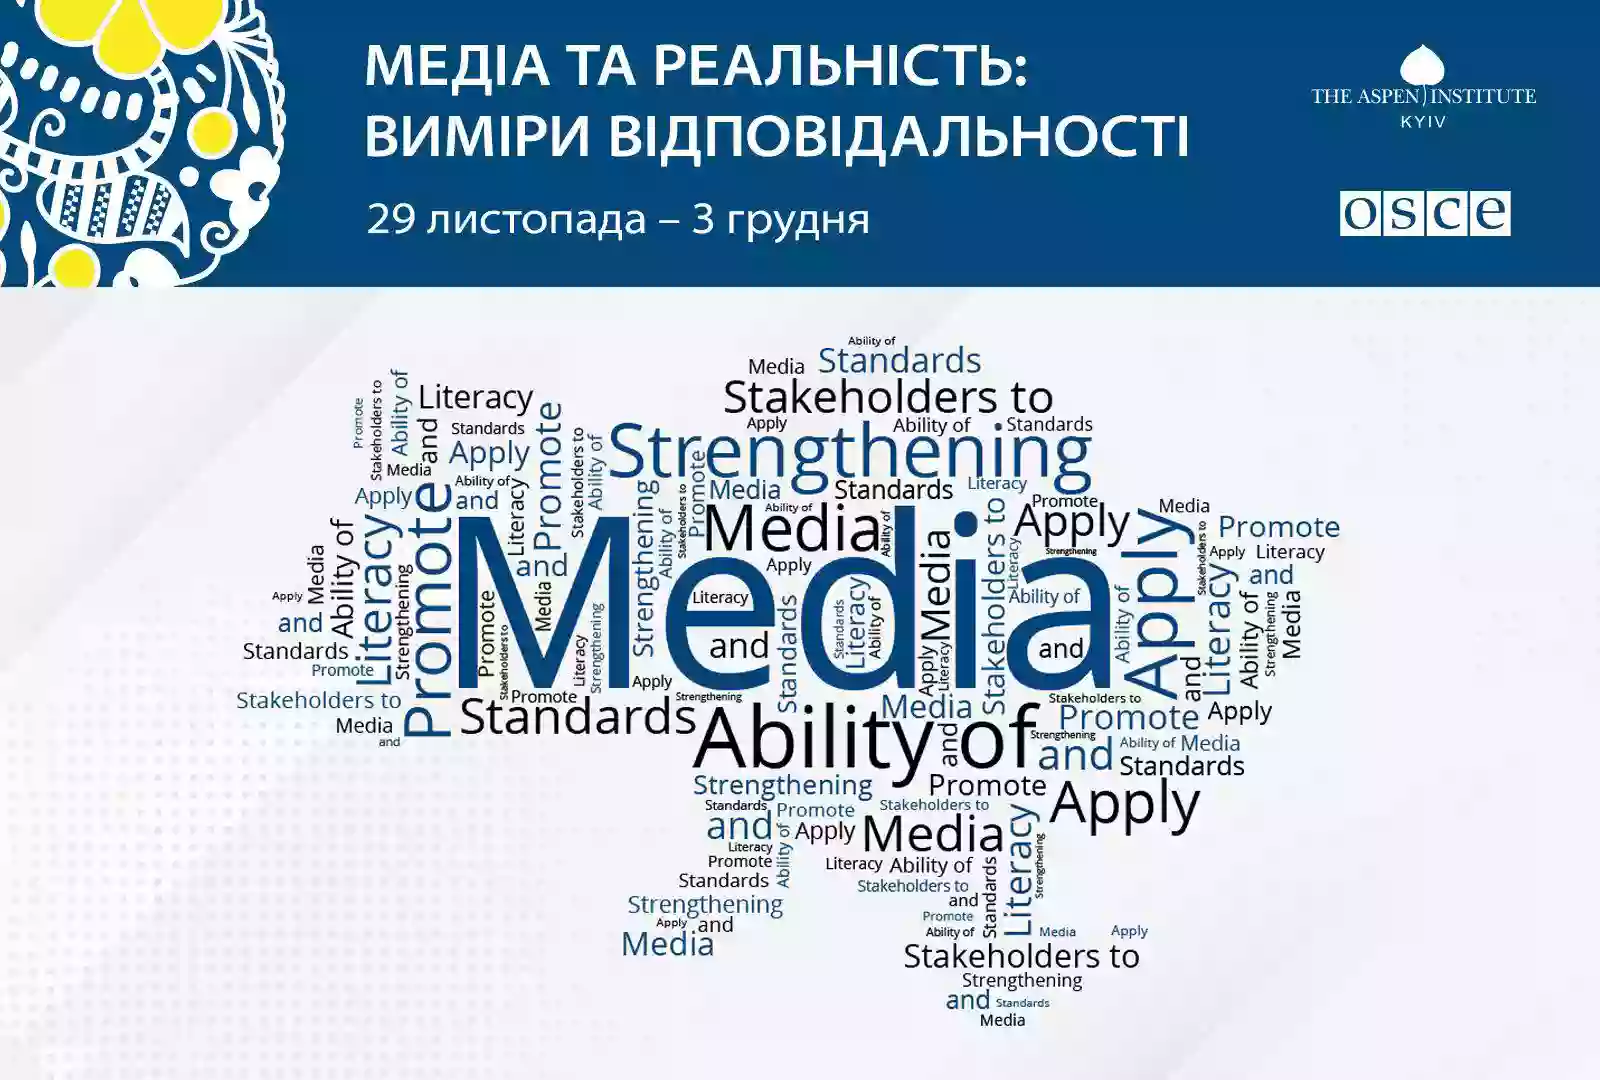 До 15 жовтня – прийом заявок на семінар «Медіа та реальність: виміри відповідальності» від Аспен Інститут Київ